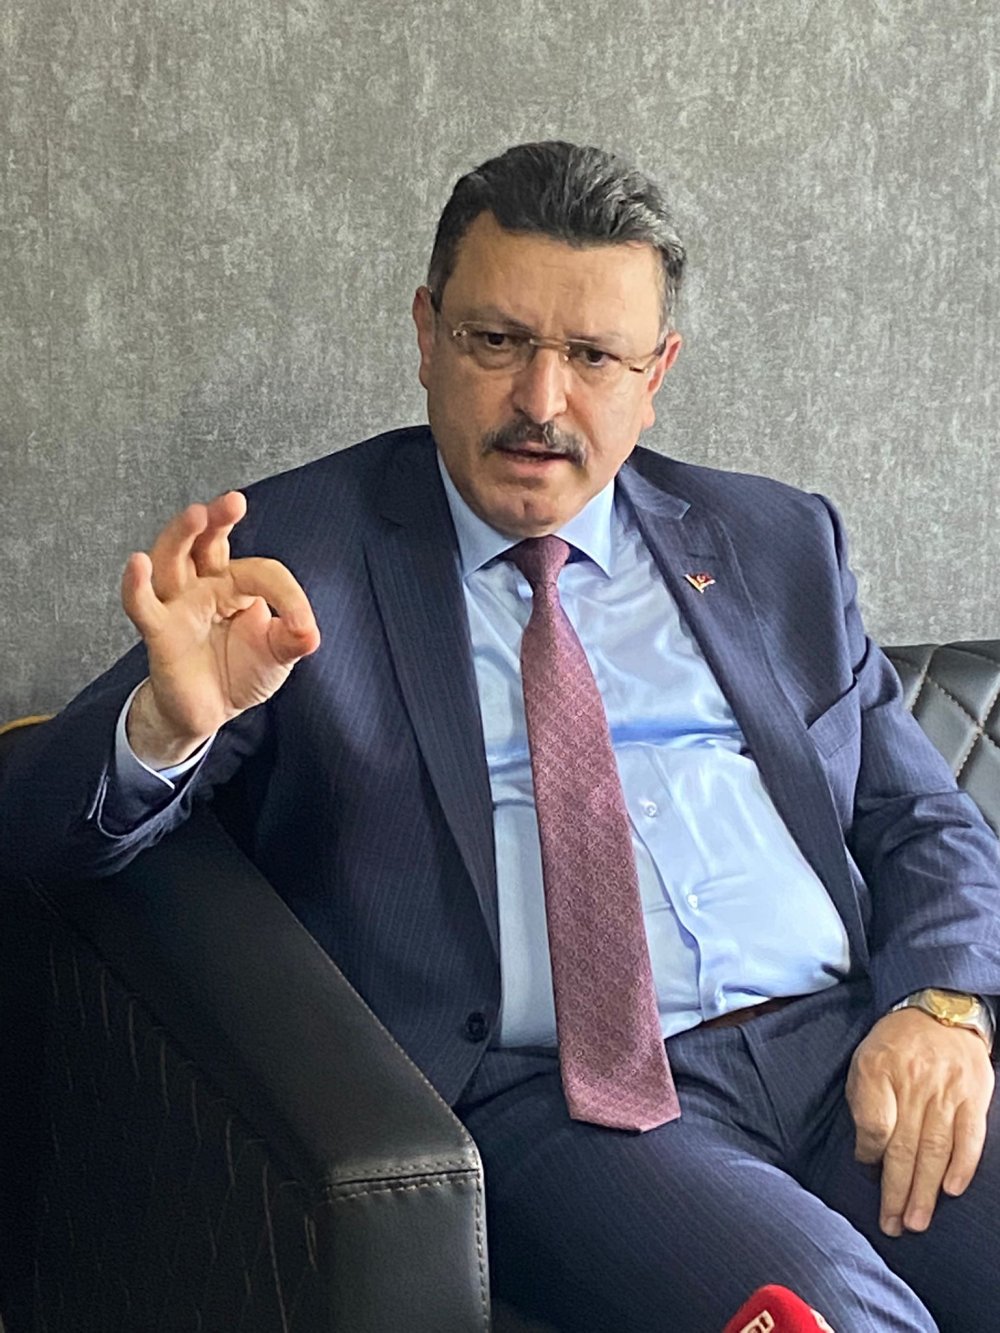 Ortahisar Belediye Başkanı ahmet Metin Genç, 61saat'in sorularını yanıtladı  - TRABZON HABER SAYFASI